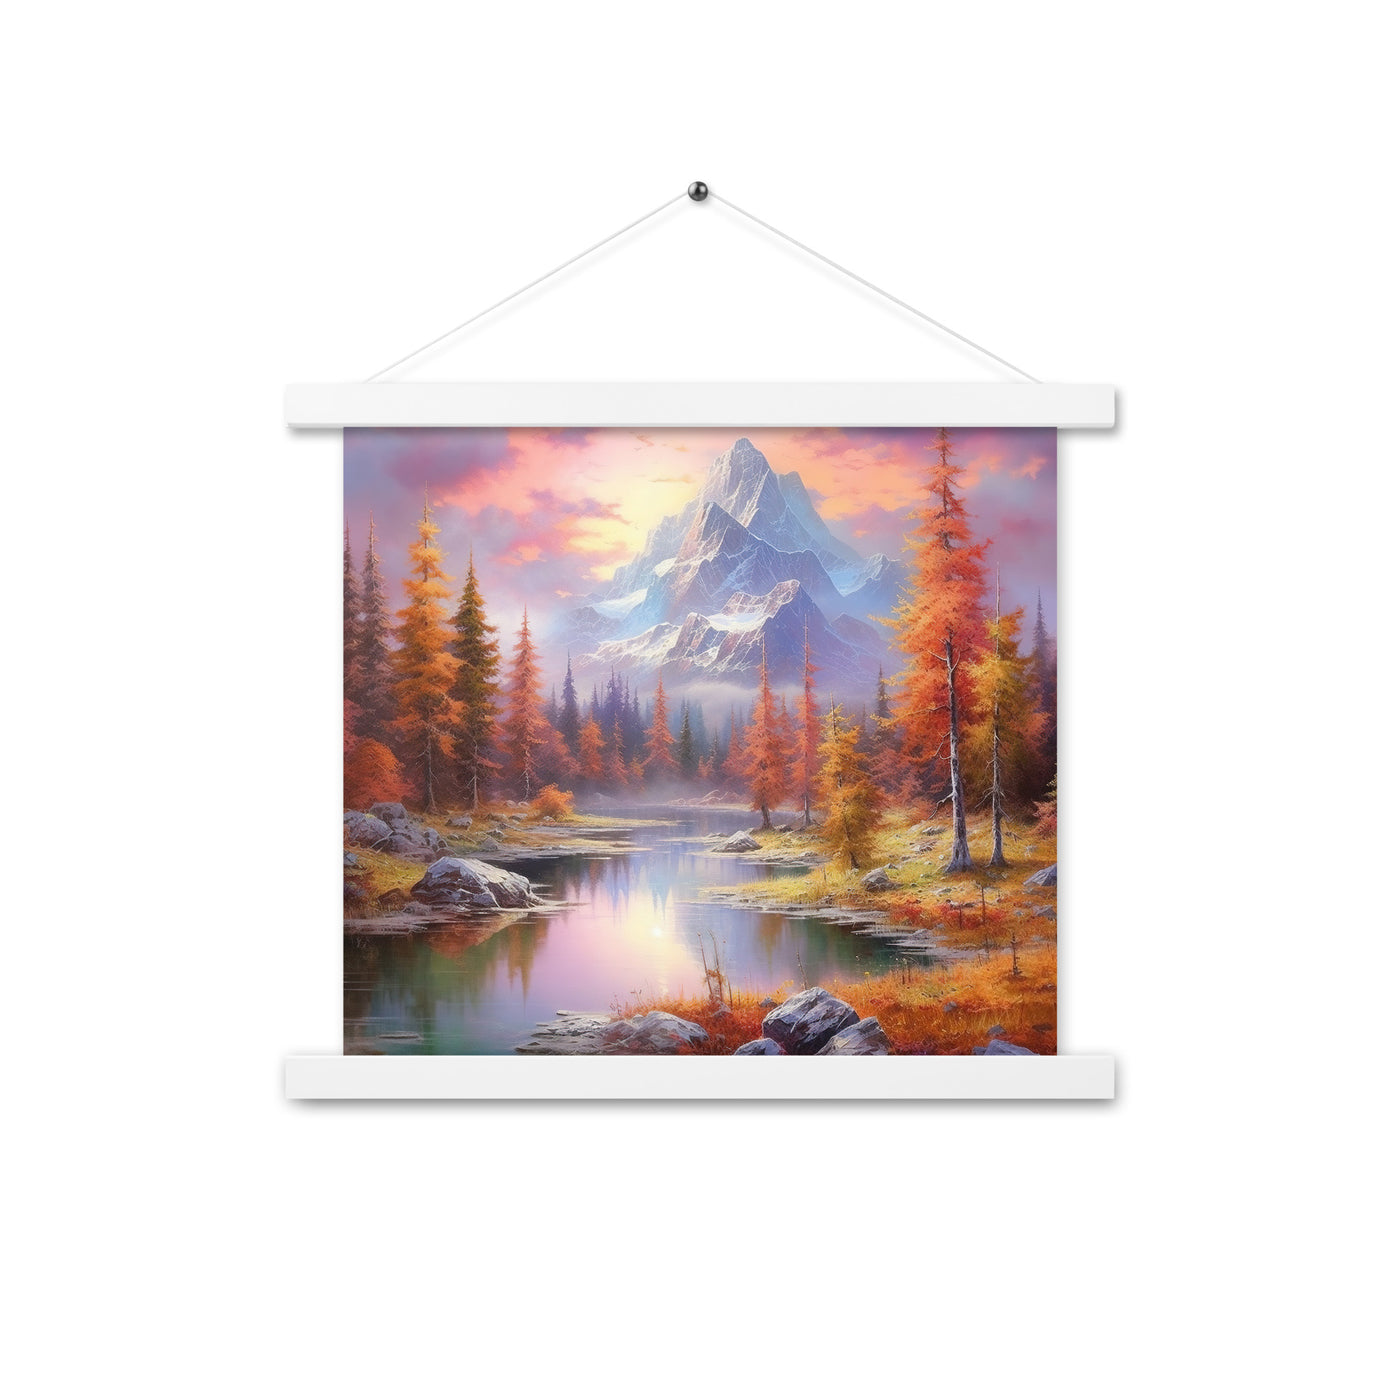 Landschaftsmalerei - Berge, Bäume, Bergsee und Herbstfarben - Premium Poster mit Aufhängung berge xxx 35.6 x 35.6 cm